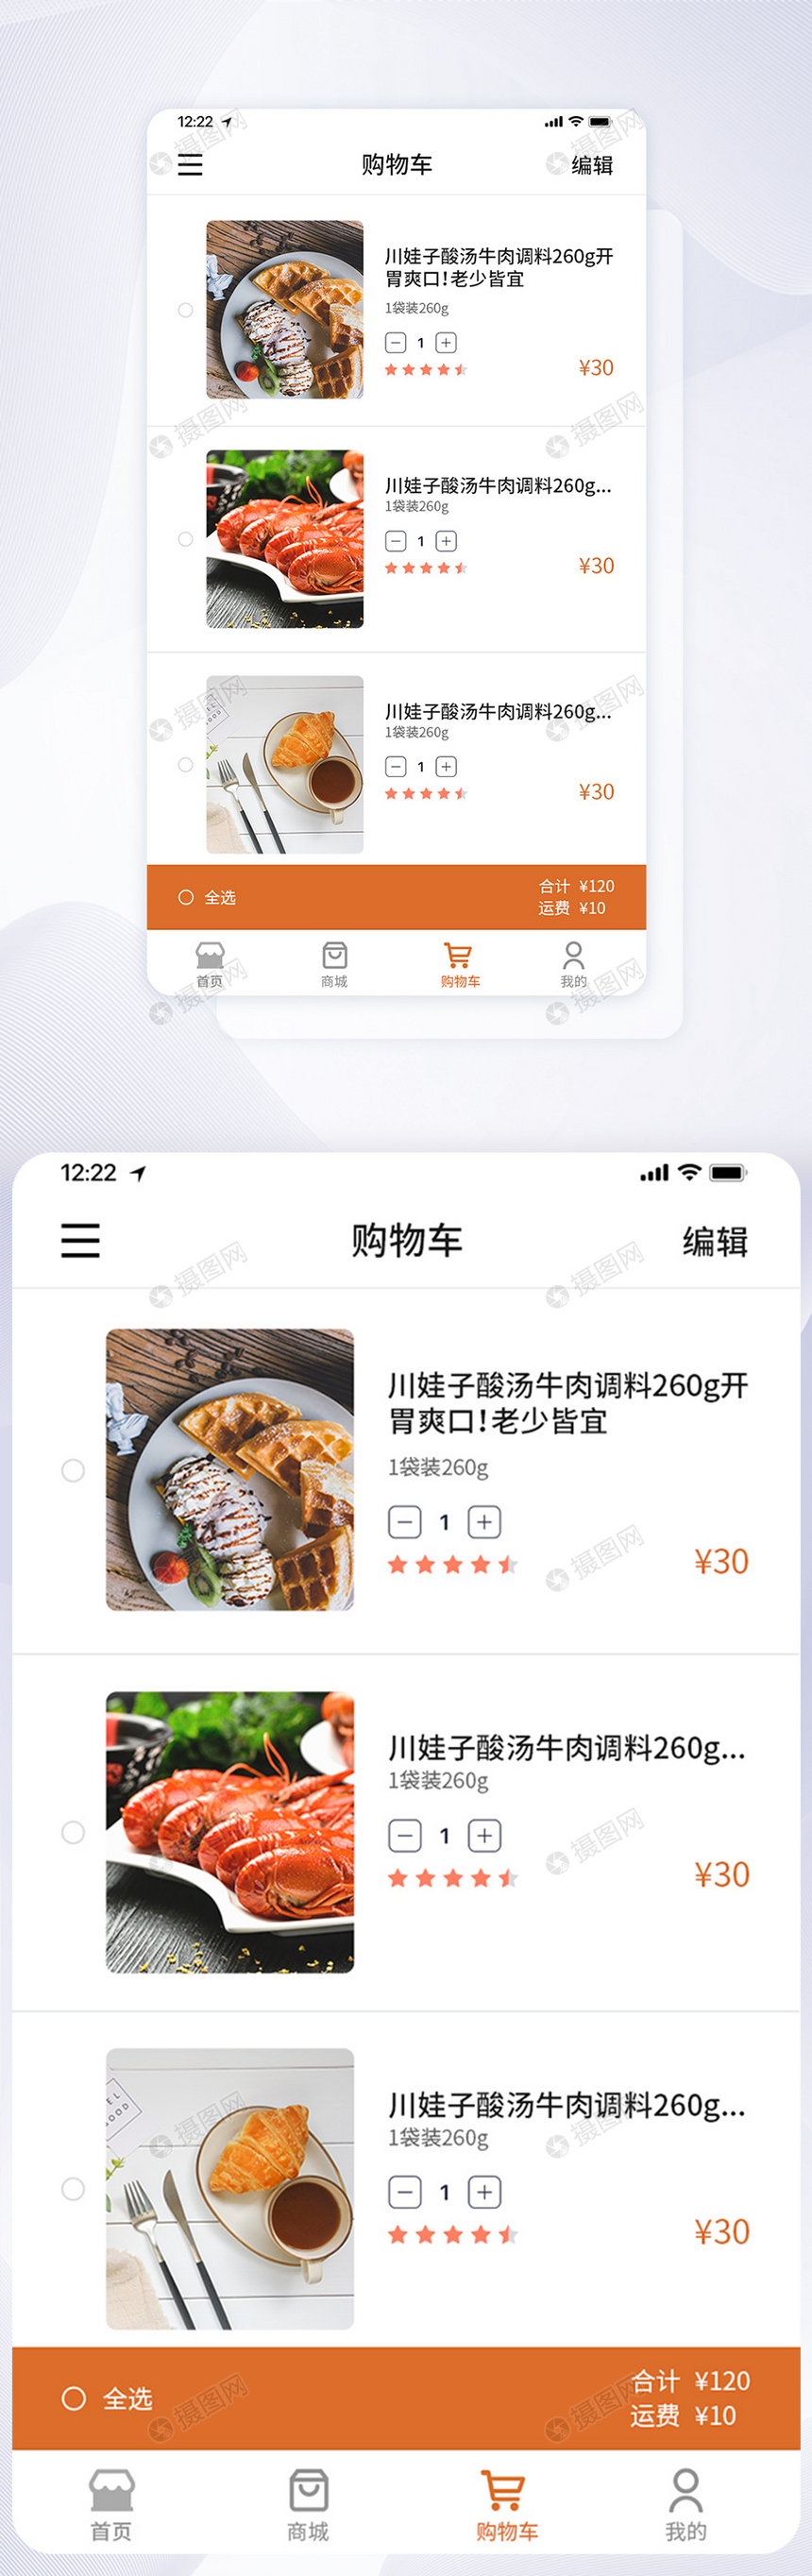 UI设计美食做饭教程购物车手机APP界面图片